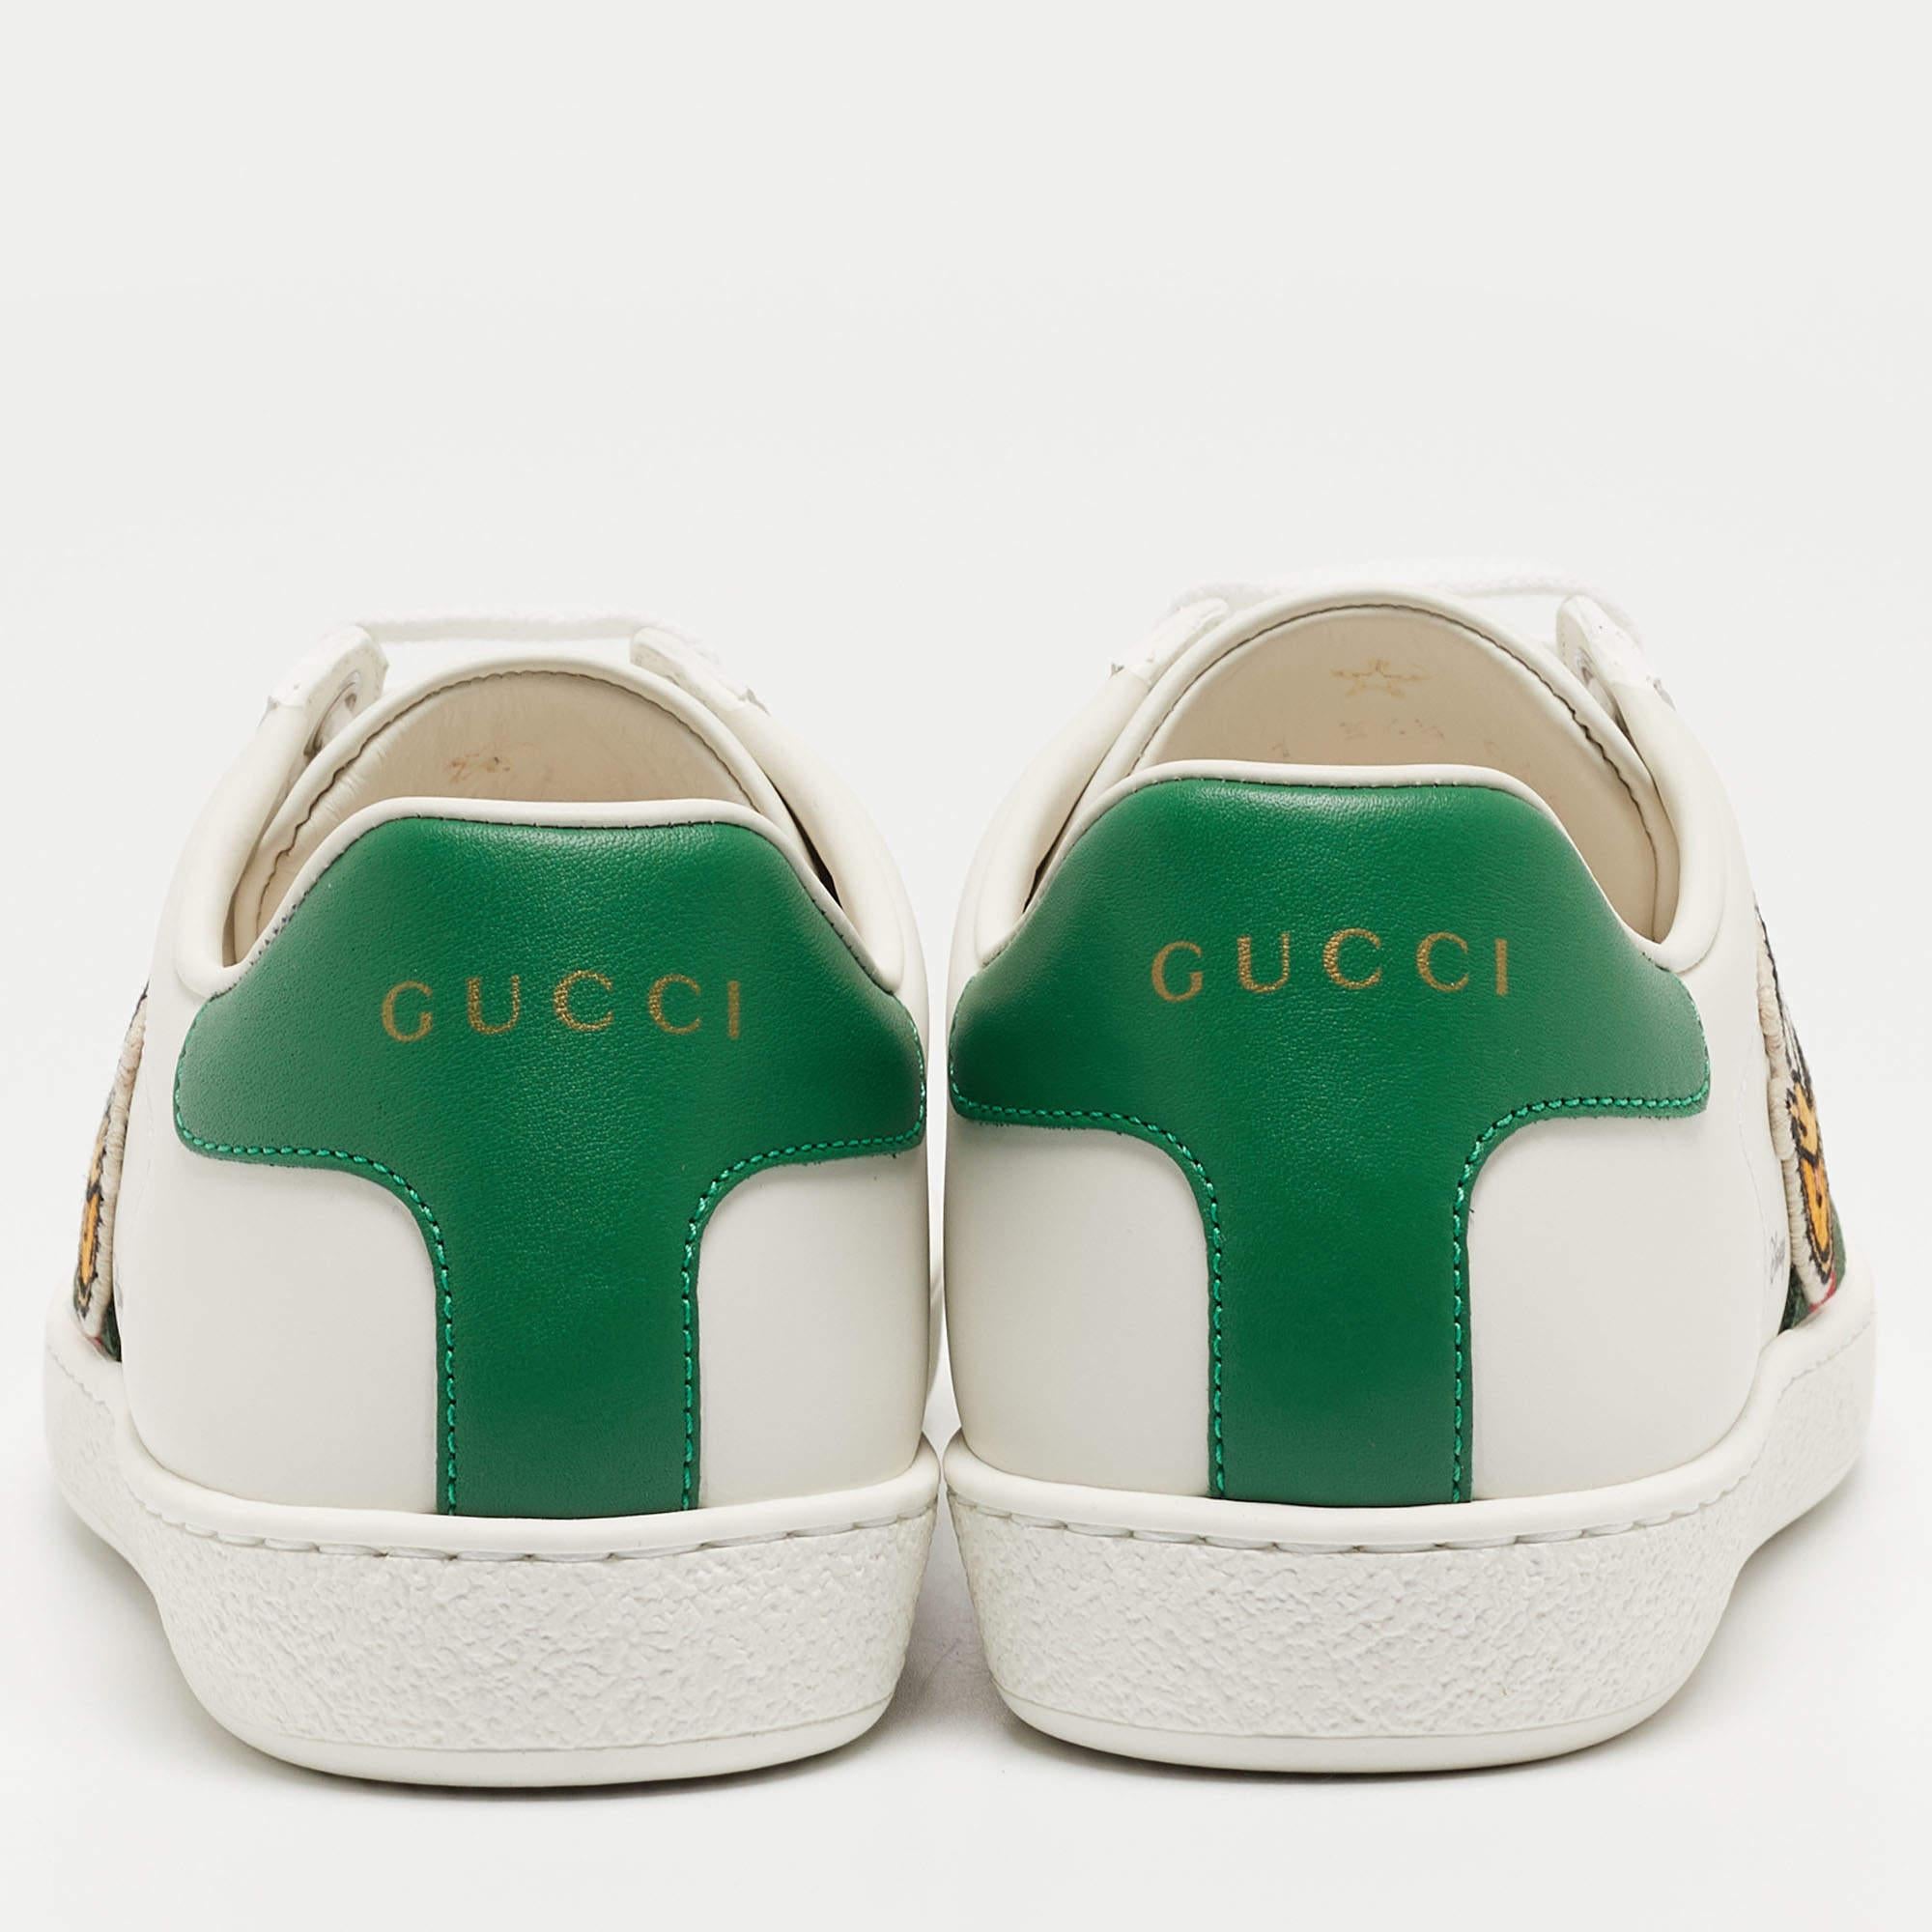 Diese Gucci Ace Sneakers in klassischer Silhouette sind eine nahtlose Kombination aus Luxus, Komfort und Stil. Diese Sneaker sind mit charakteristischen Details und bequemen Innensohlen ausgestattet.

Enthält: Original Staubbeutel, Original Box,